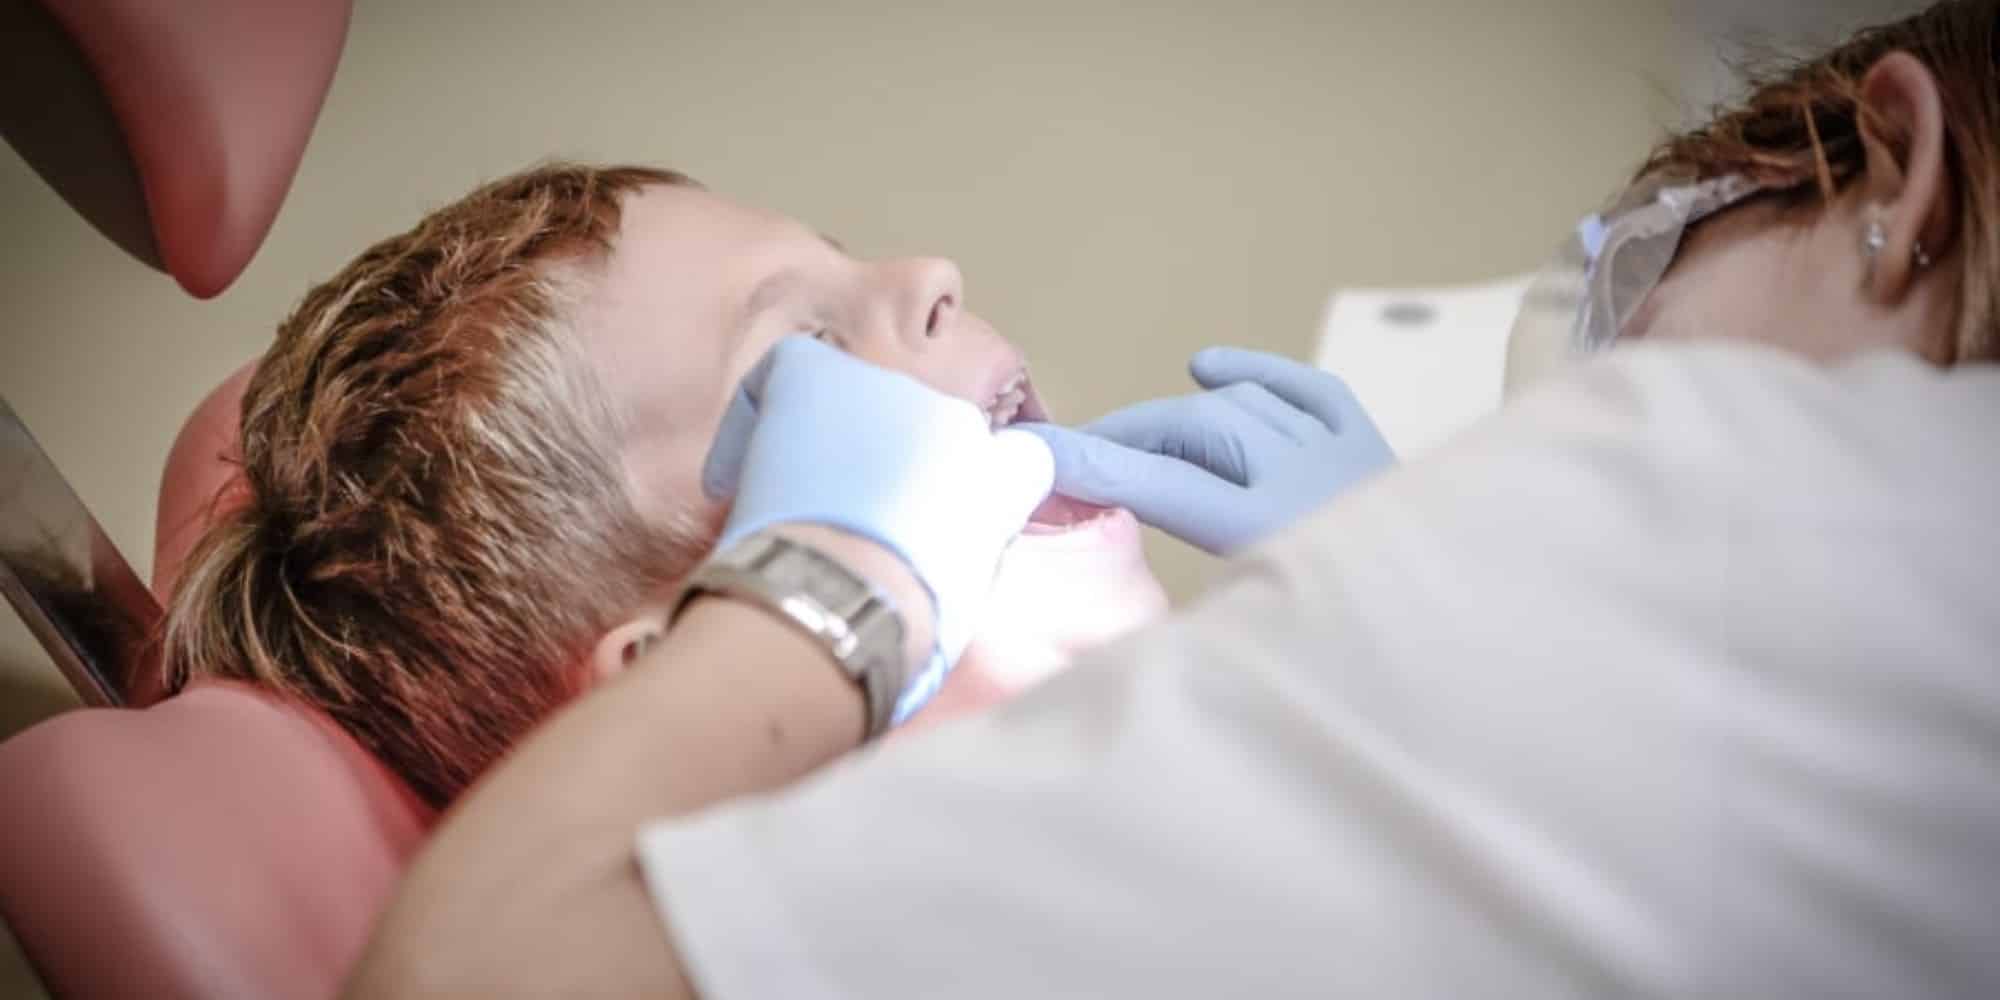 Στιγμιότυπο από επίσκεψη παιδιού σε οδοντιατρείο